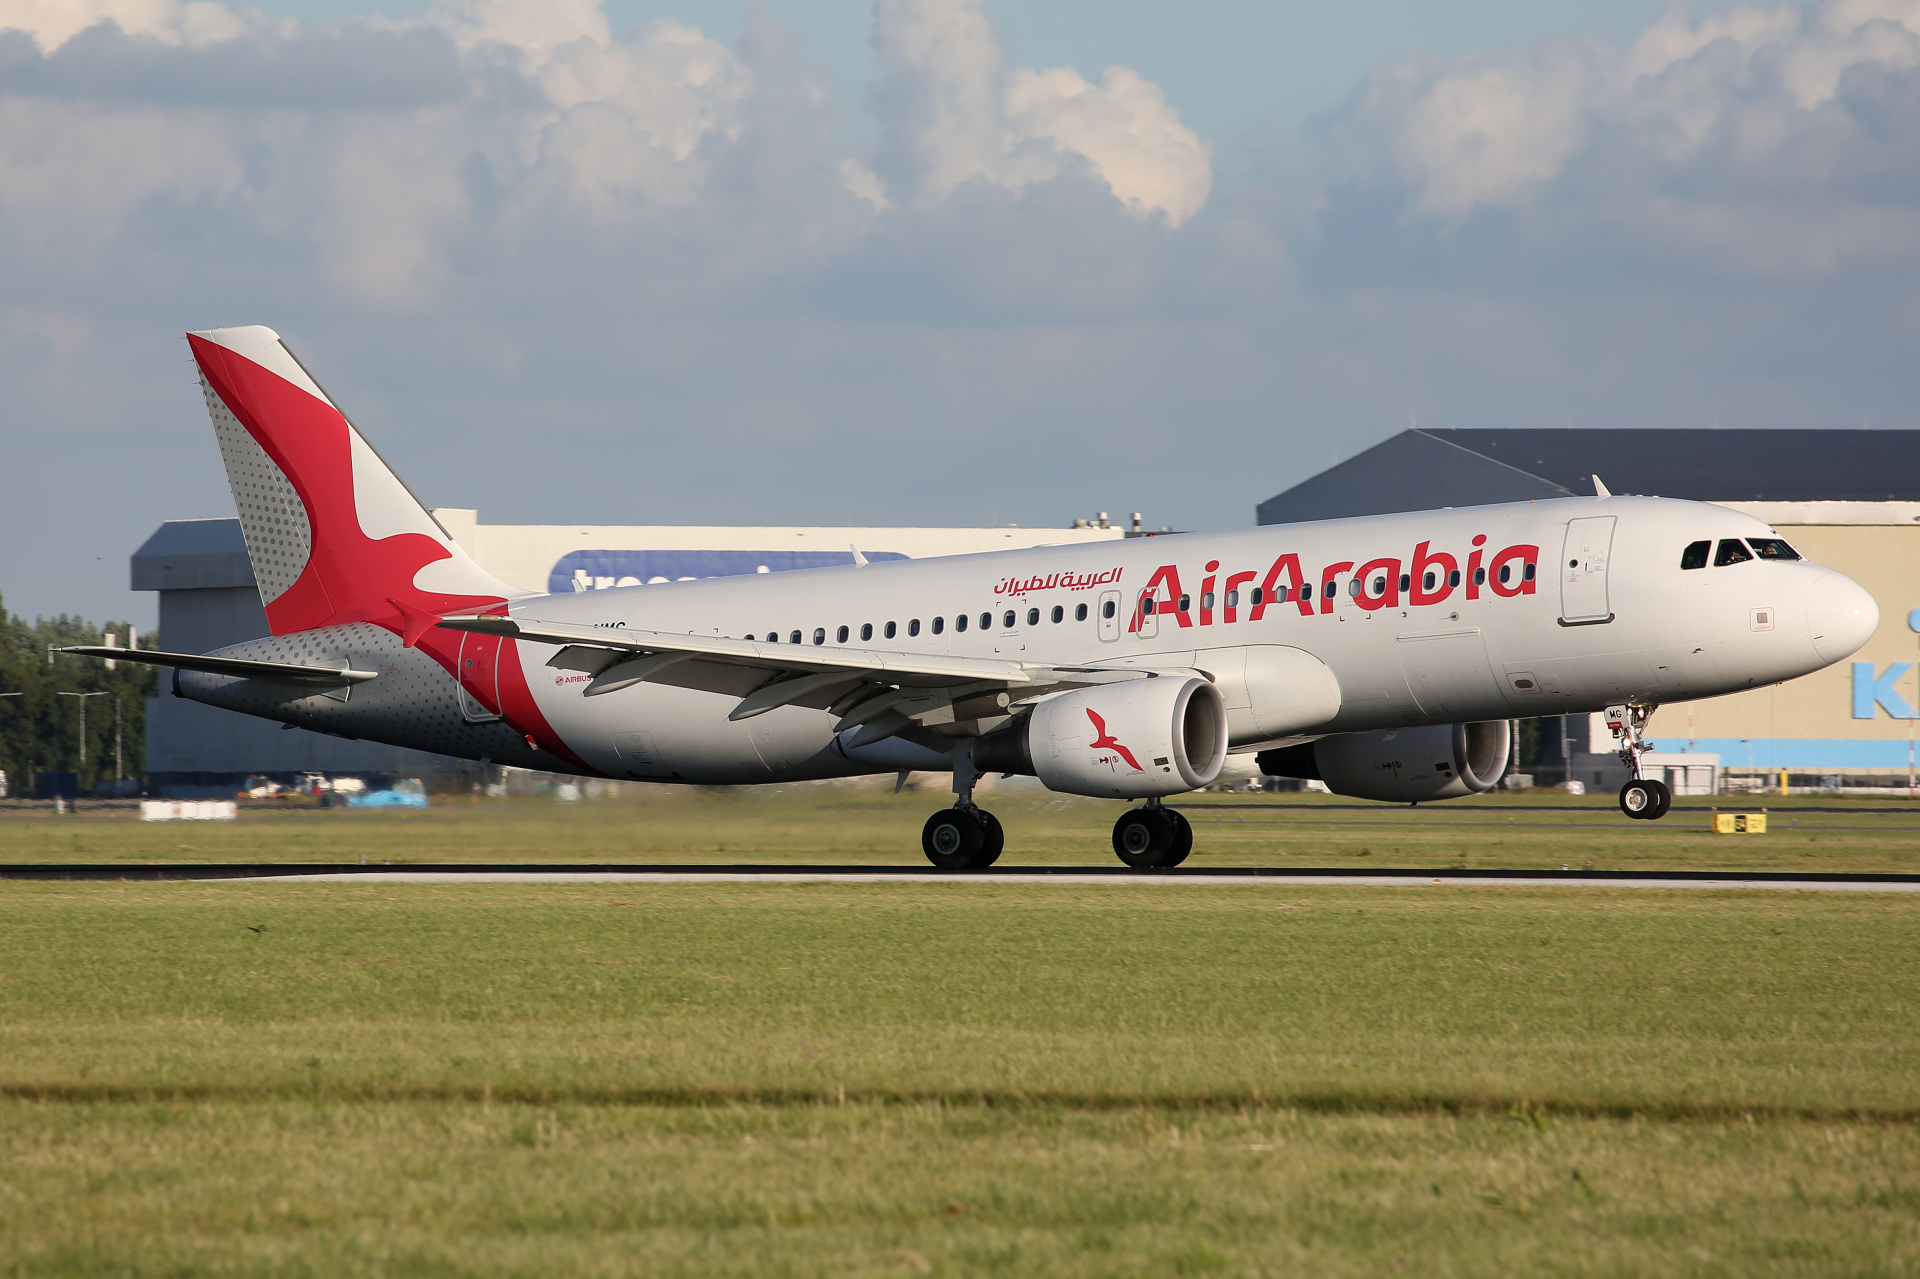 CN-NMG, Air Arabia (Aircraft » Schiphol Spotting » Airbus A320-200)